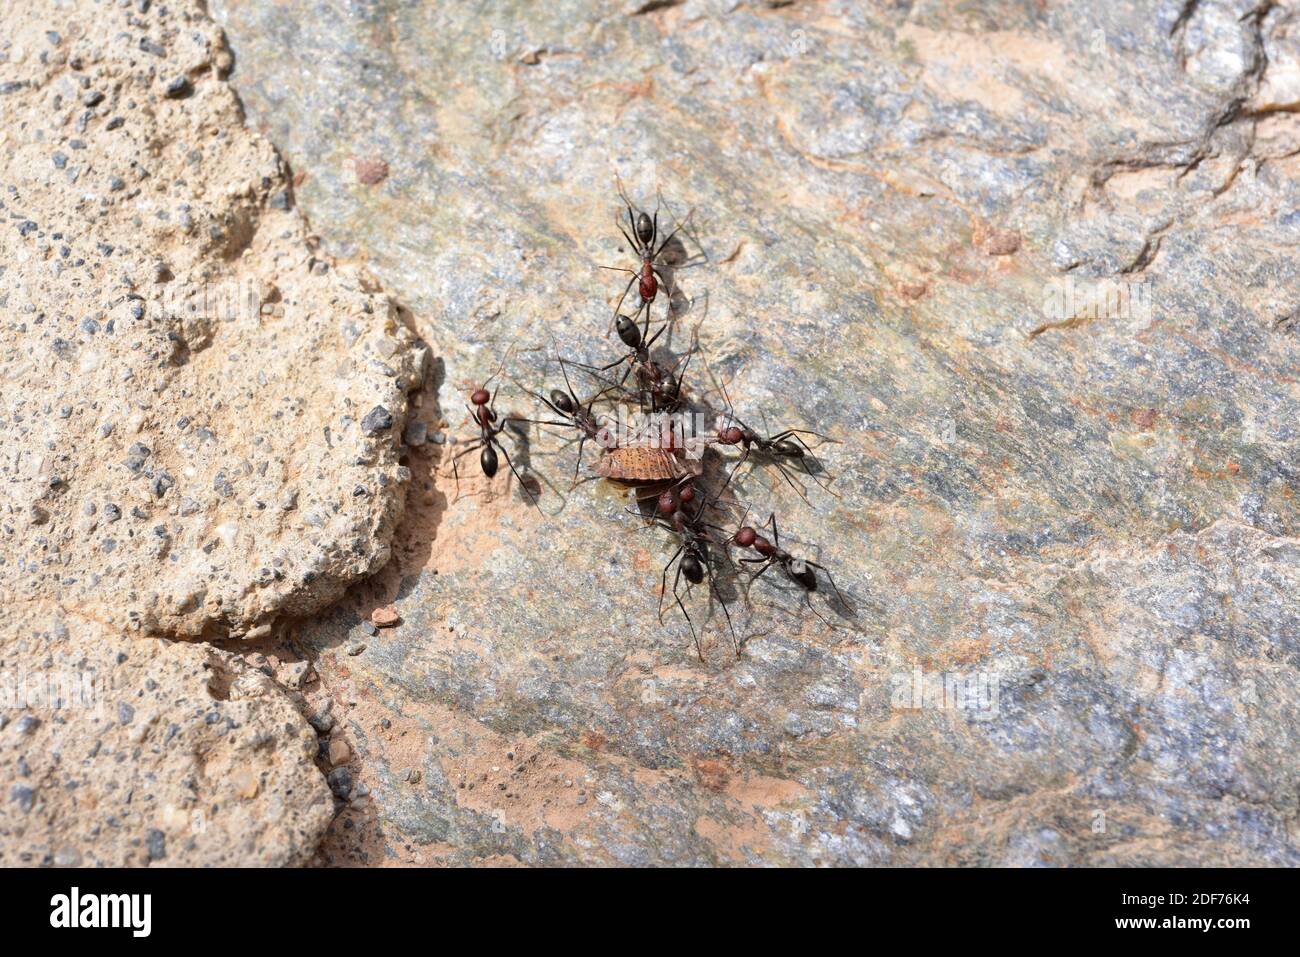 Hormigas cazando una presa (insecto escudo). Esta foto fue tomada en el Parque Nacional Sierra Nevada, provincia de Granada, Andalucía, España. Foto de stock